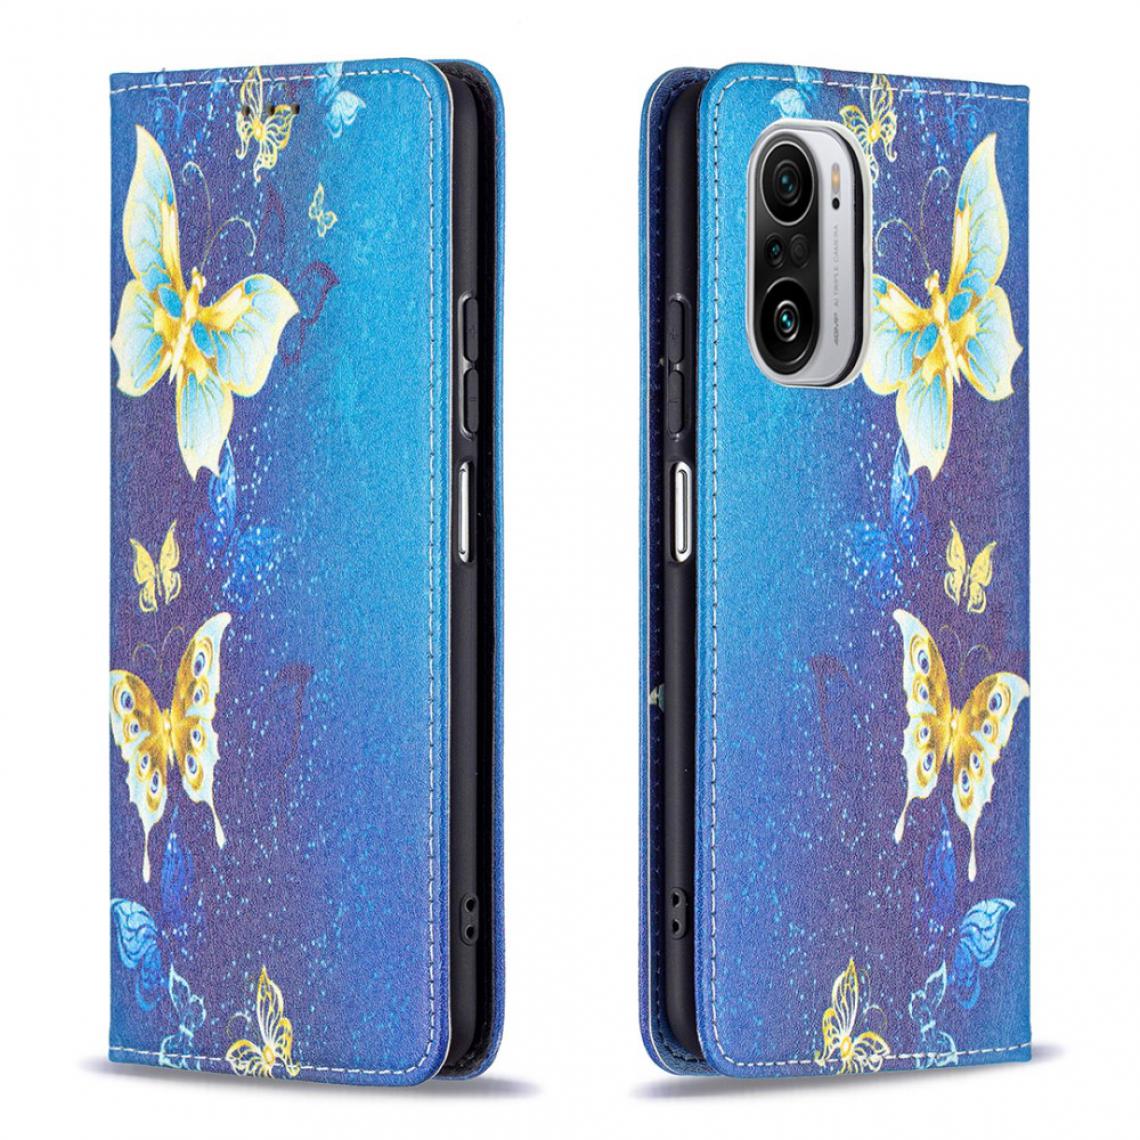 Other - Etui en PU Impression de motifs élégants Conception auto-absorbée avec support papillons d'or pour votre Xiaomi Redmi K40/K40 Pro/Mi 11i/Poco F3 - Coque, étui smartphone